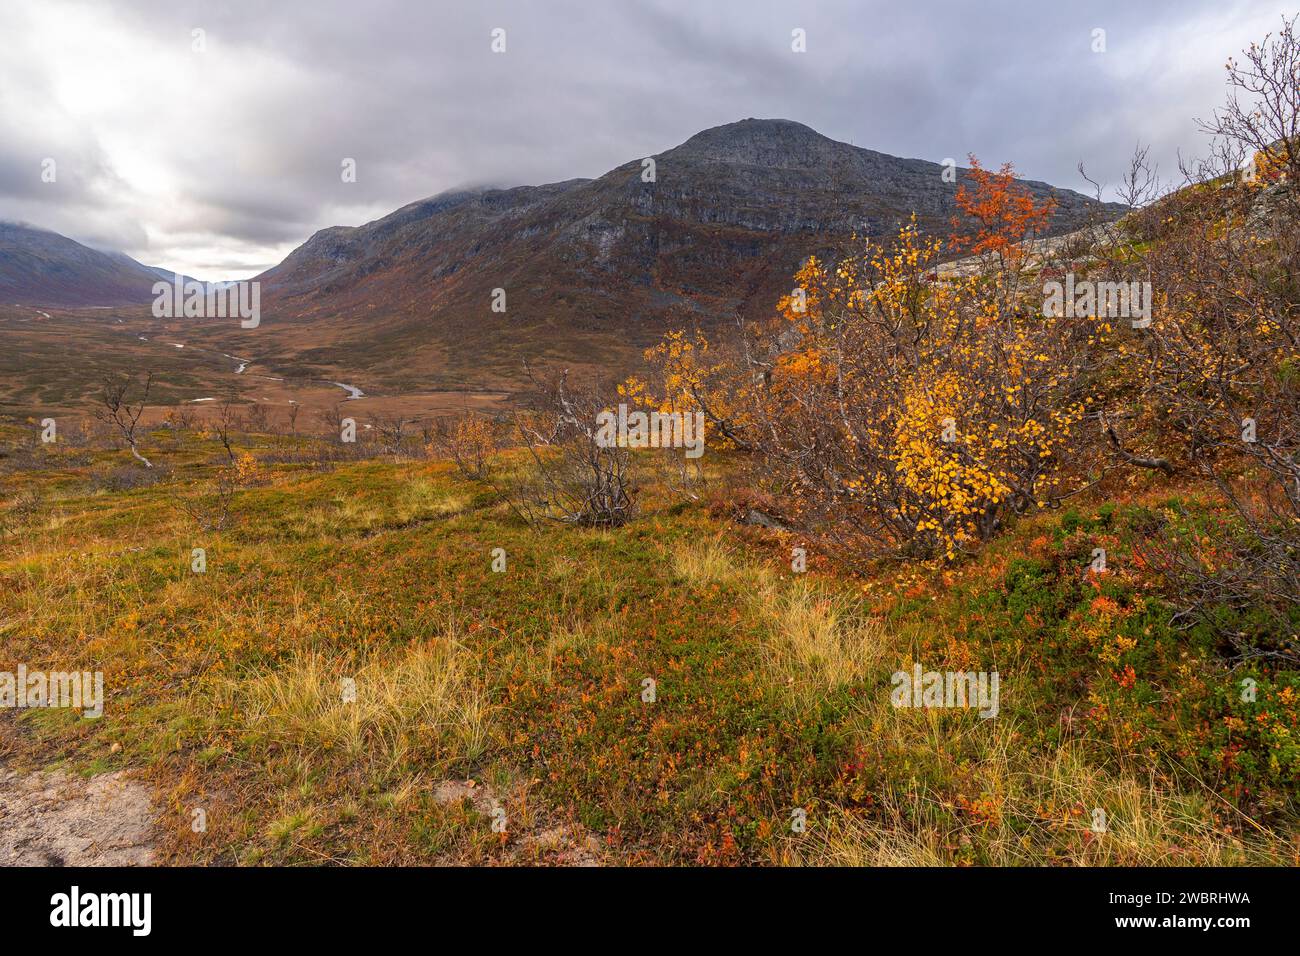 Sich krümmende Birken in den Bergen von Kvaløya, Norvégien. gelb und orange gefärbte Bäume im Herbst in einem Hochtal, rote gelbe und Grüne Pflanzen Banque D'Images